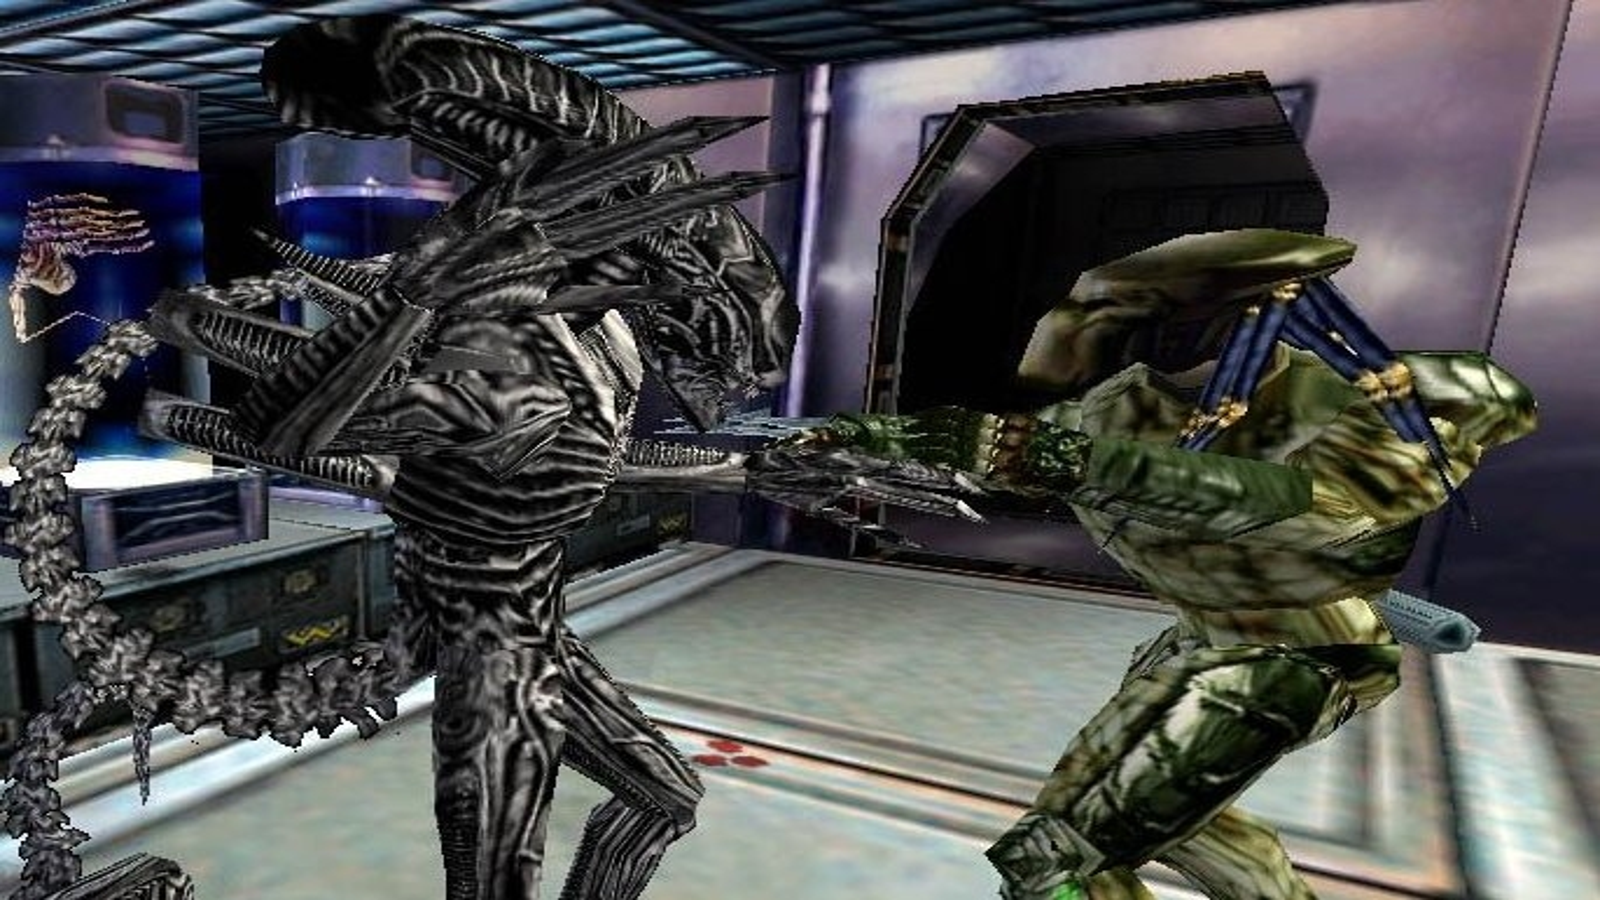  Aliens Vs. Predator : Video Games